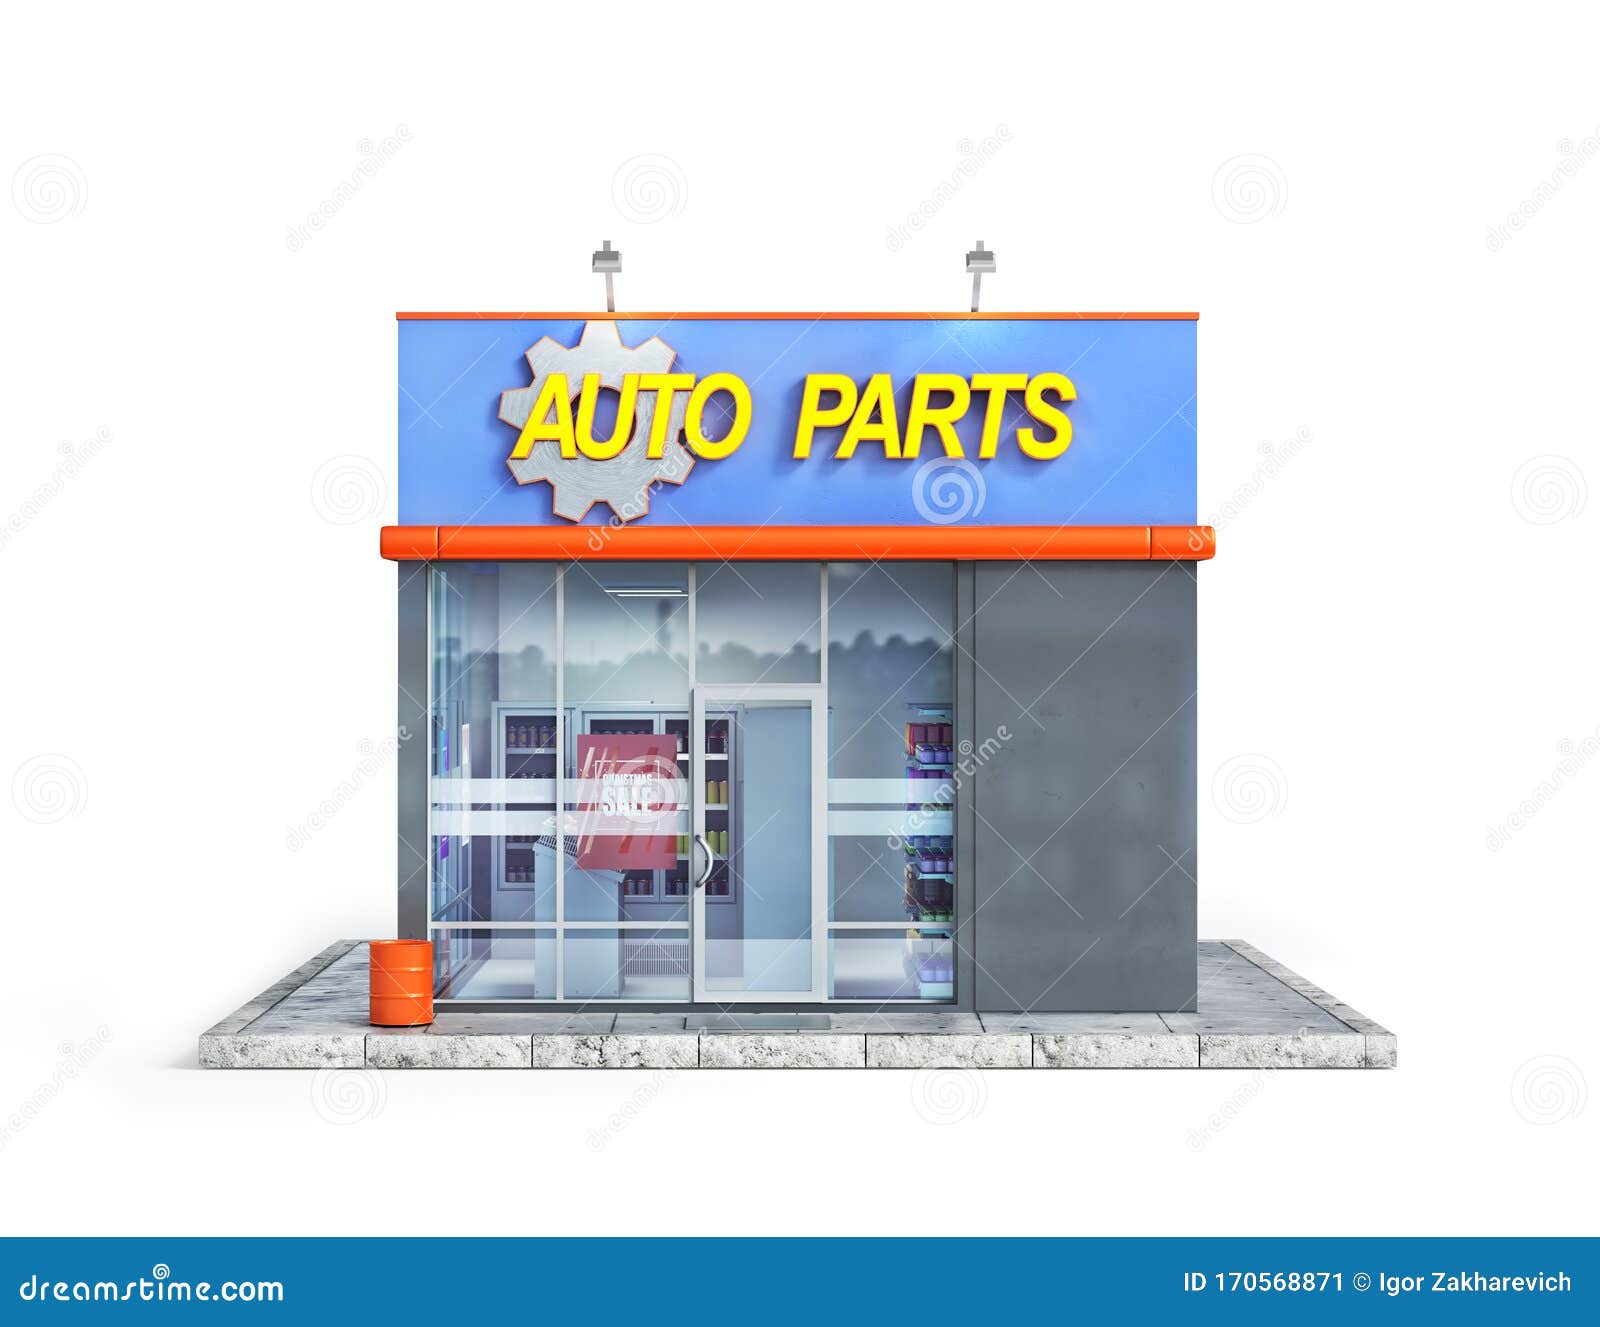 automobile parts shop